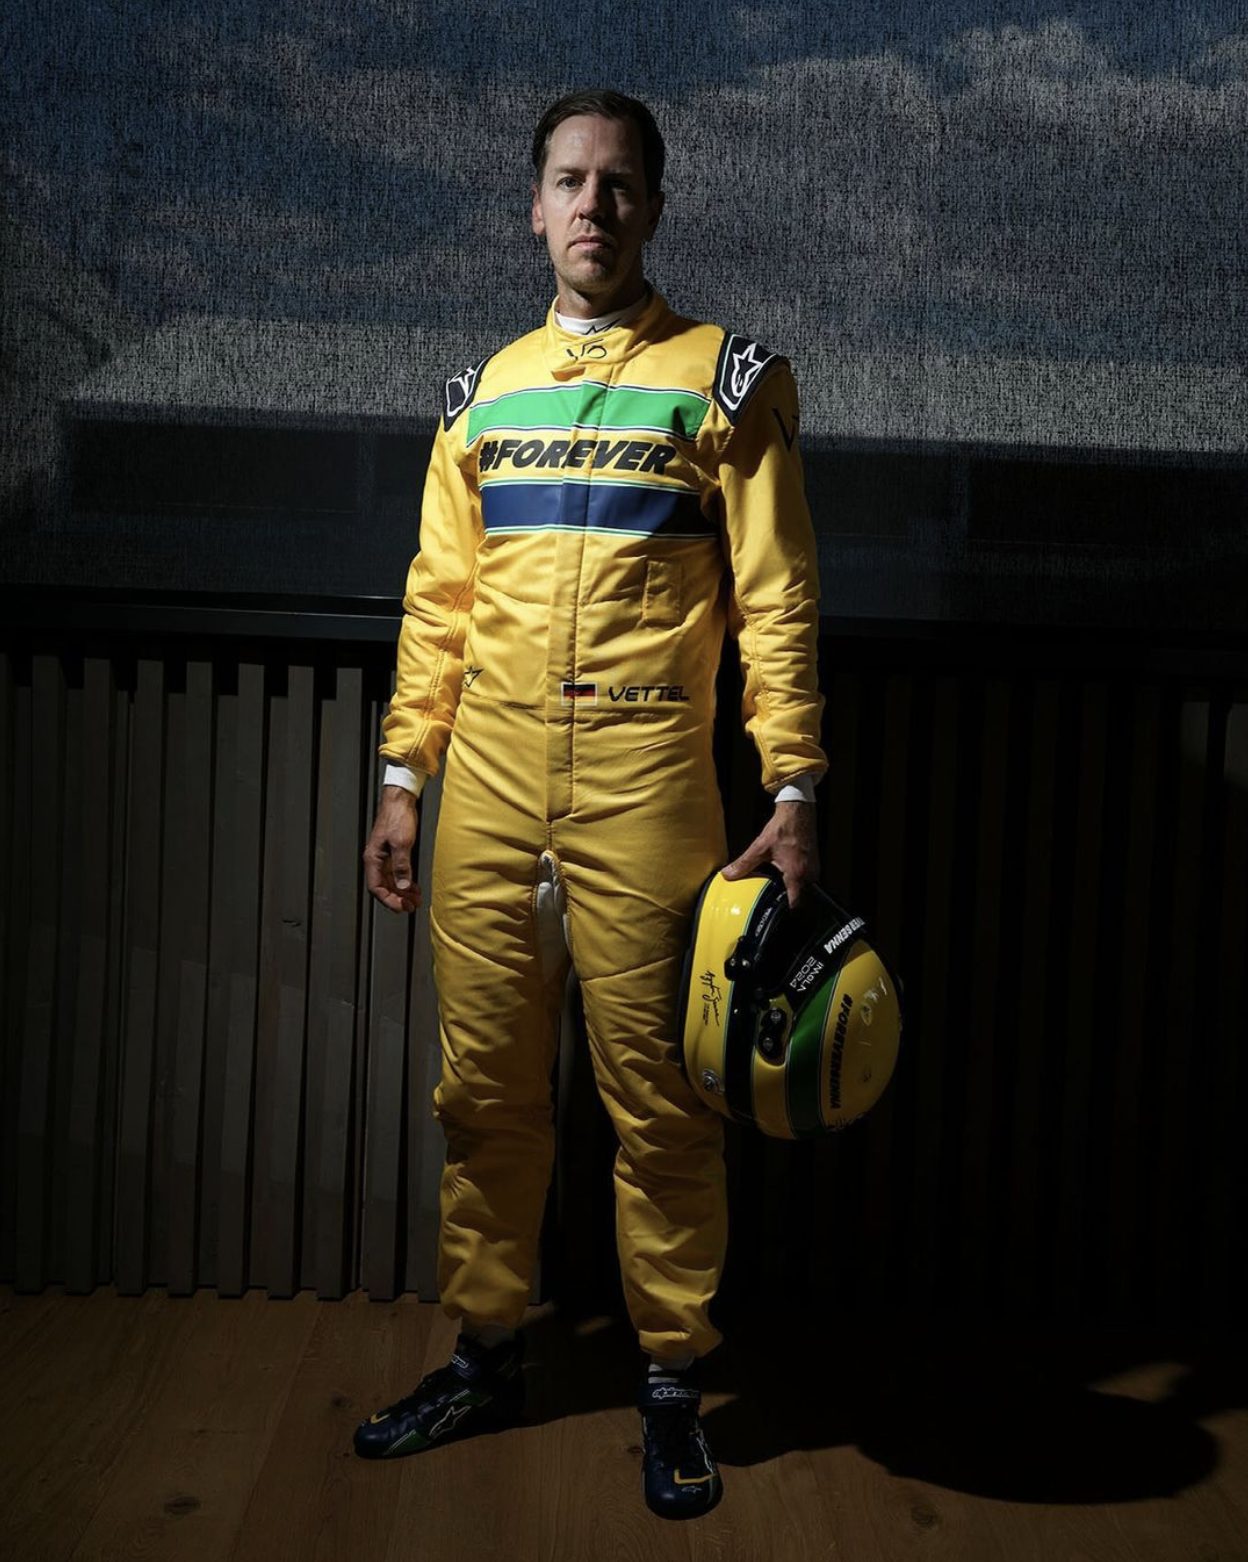 Uma pessoa com um traje de corrida amarelo segura um capacete, evocativo do equipamento icônico de Ayrton Senna. O traje tem “#ForEver” estampado no peito. O fundo é escuro e interno.